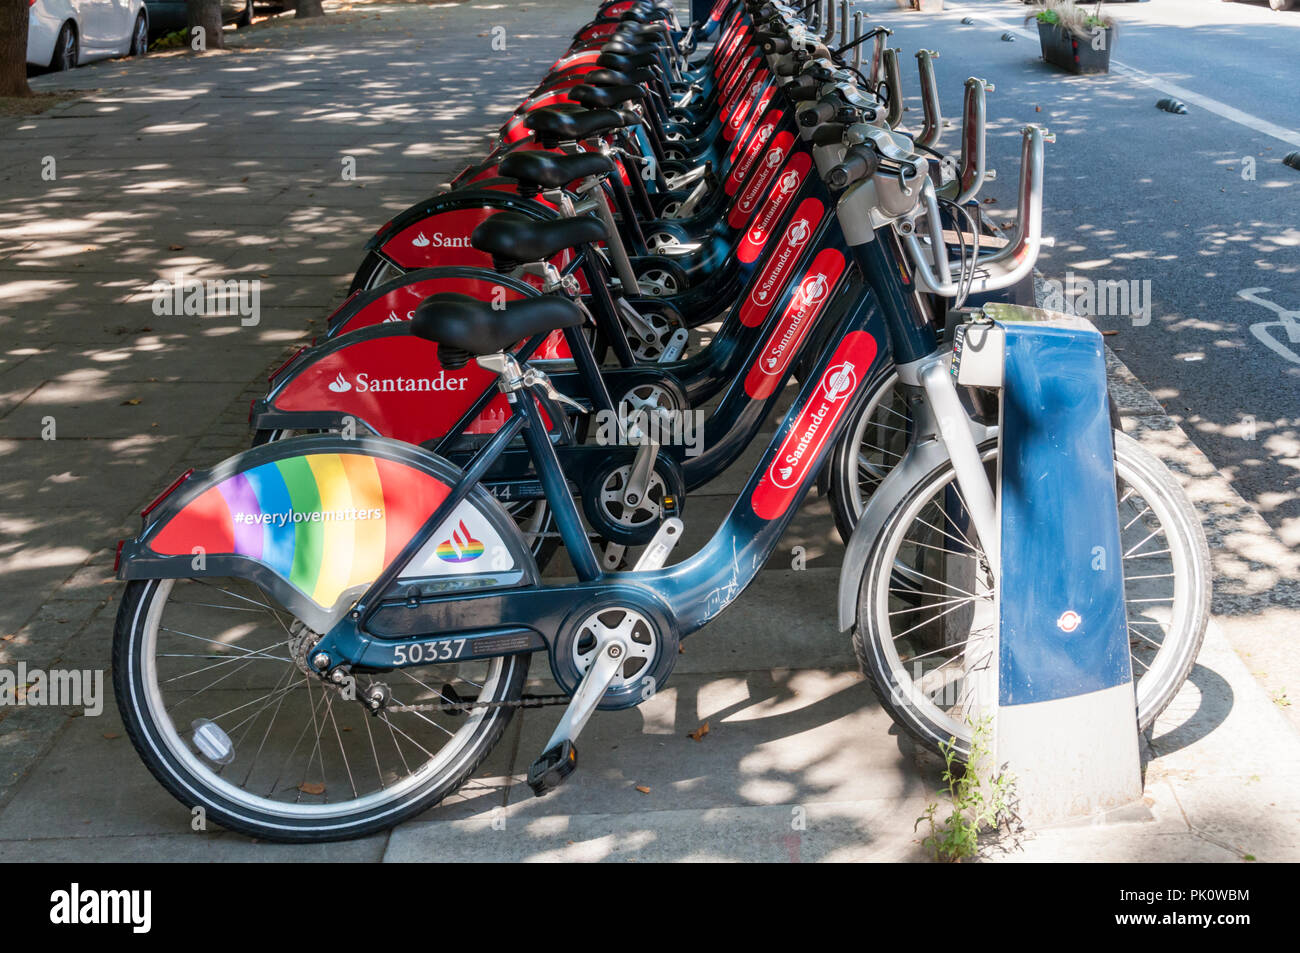 Santander patrocinado con un servicio de alquiler de bicicletas en la comunidad LGBT+ rainbow librea para celebrar los actos del Orgullo Gay en Londres. Foto de stock